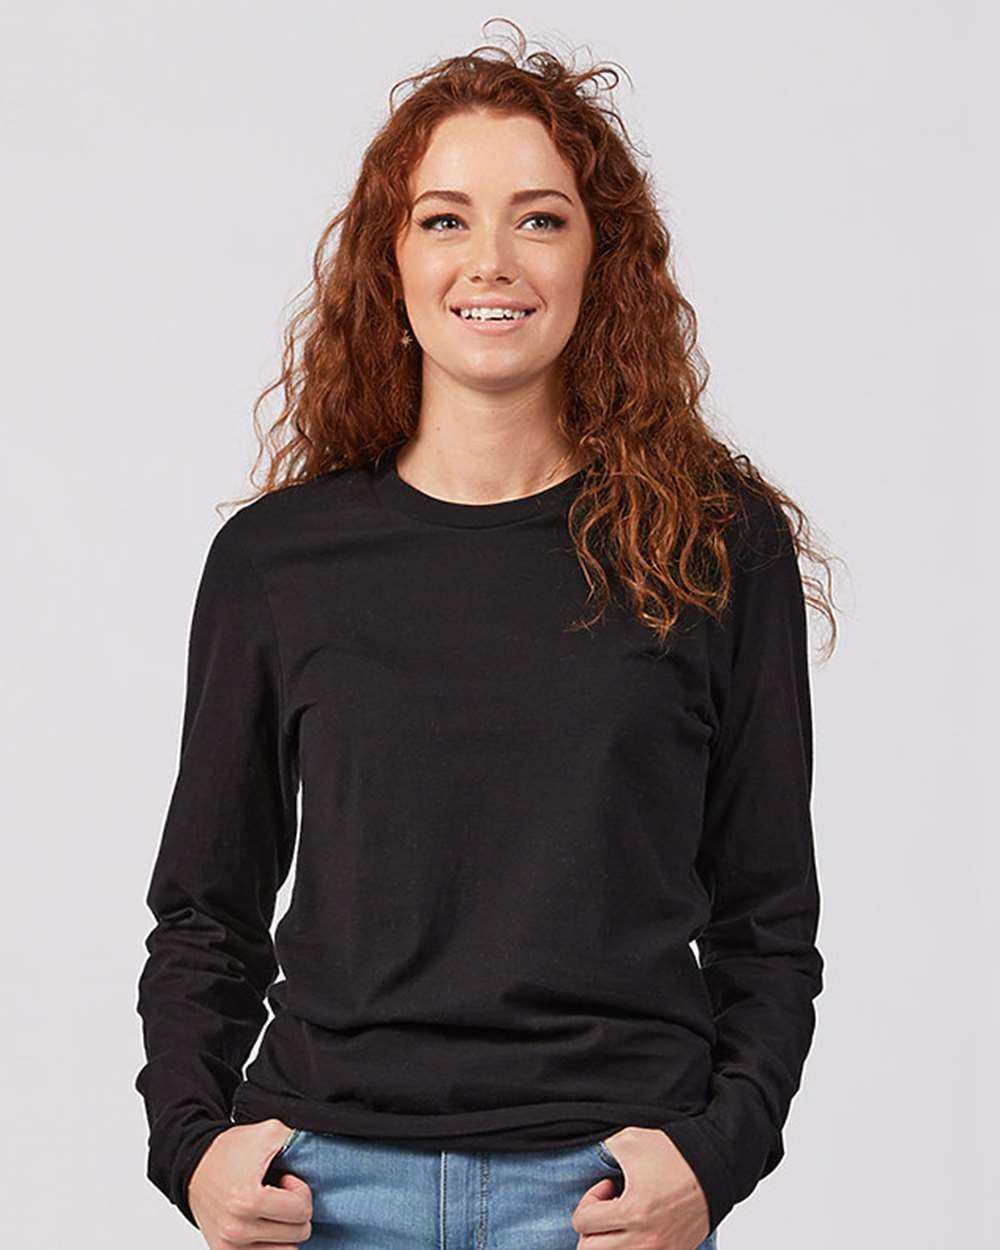 Tultex 591 Unisex Premium Cotton Long Sleeve T-Shirt - Black - HIT a Double